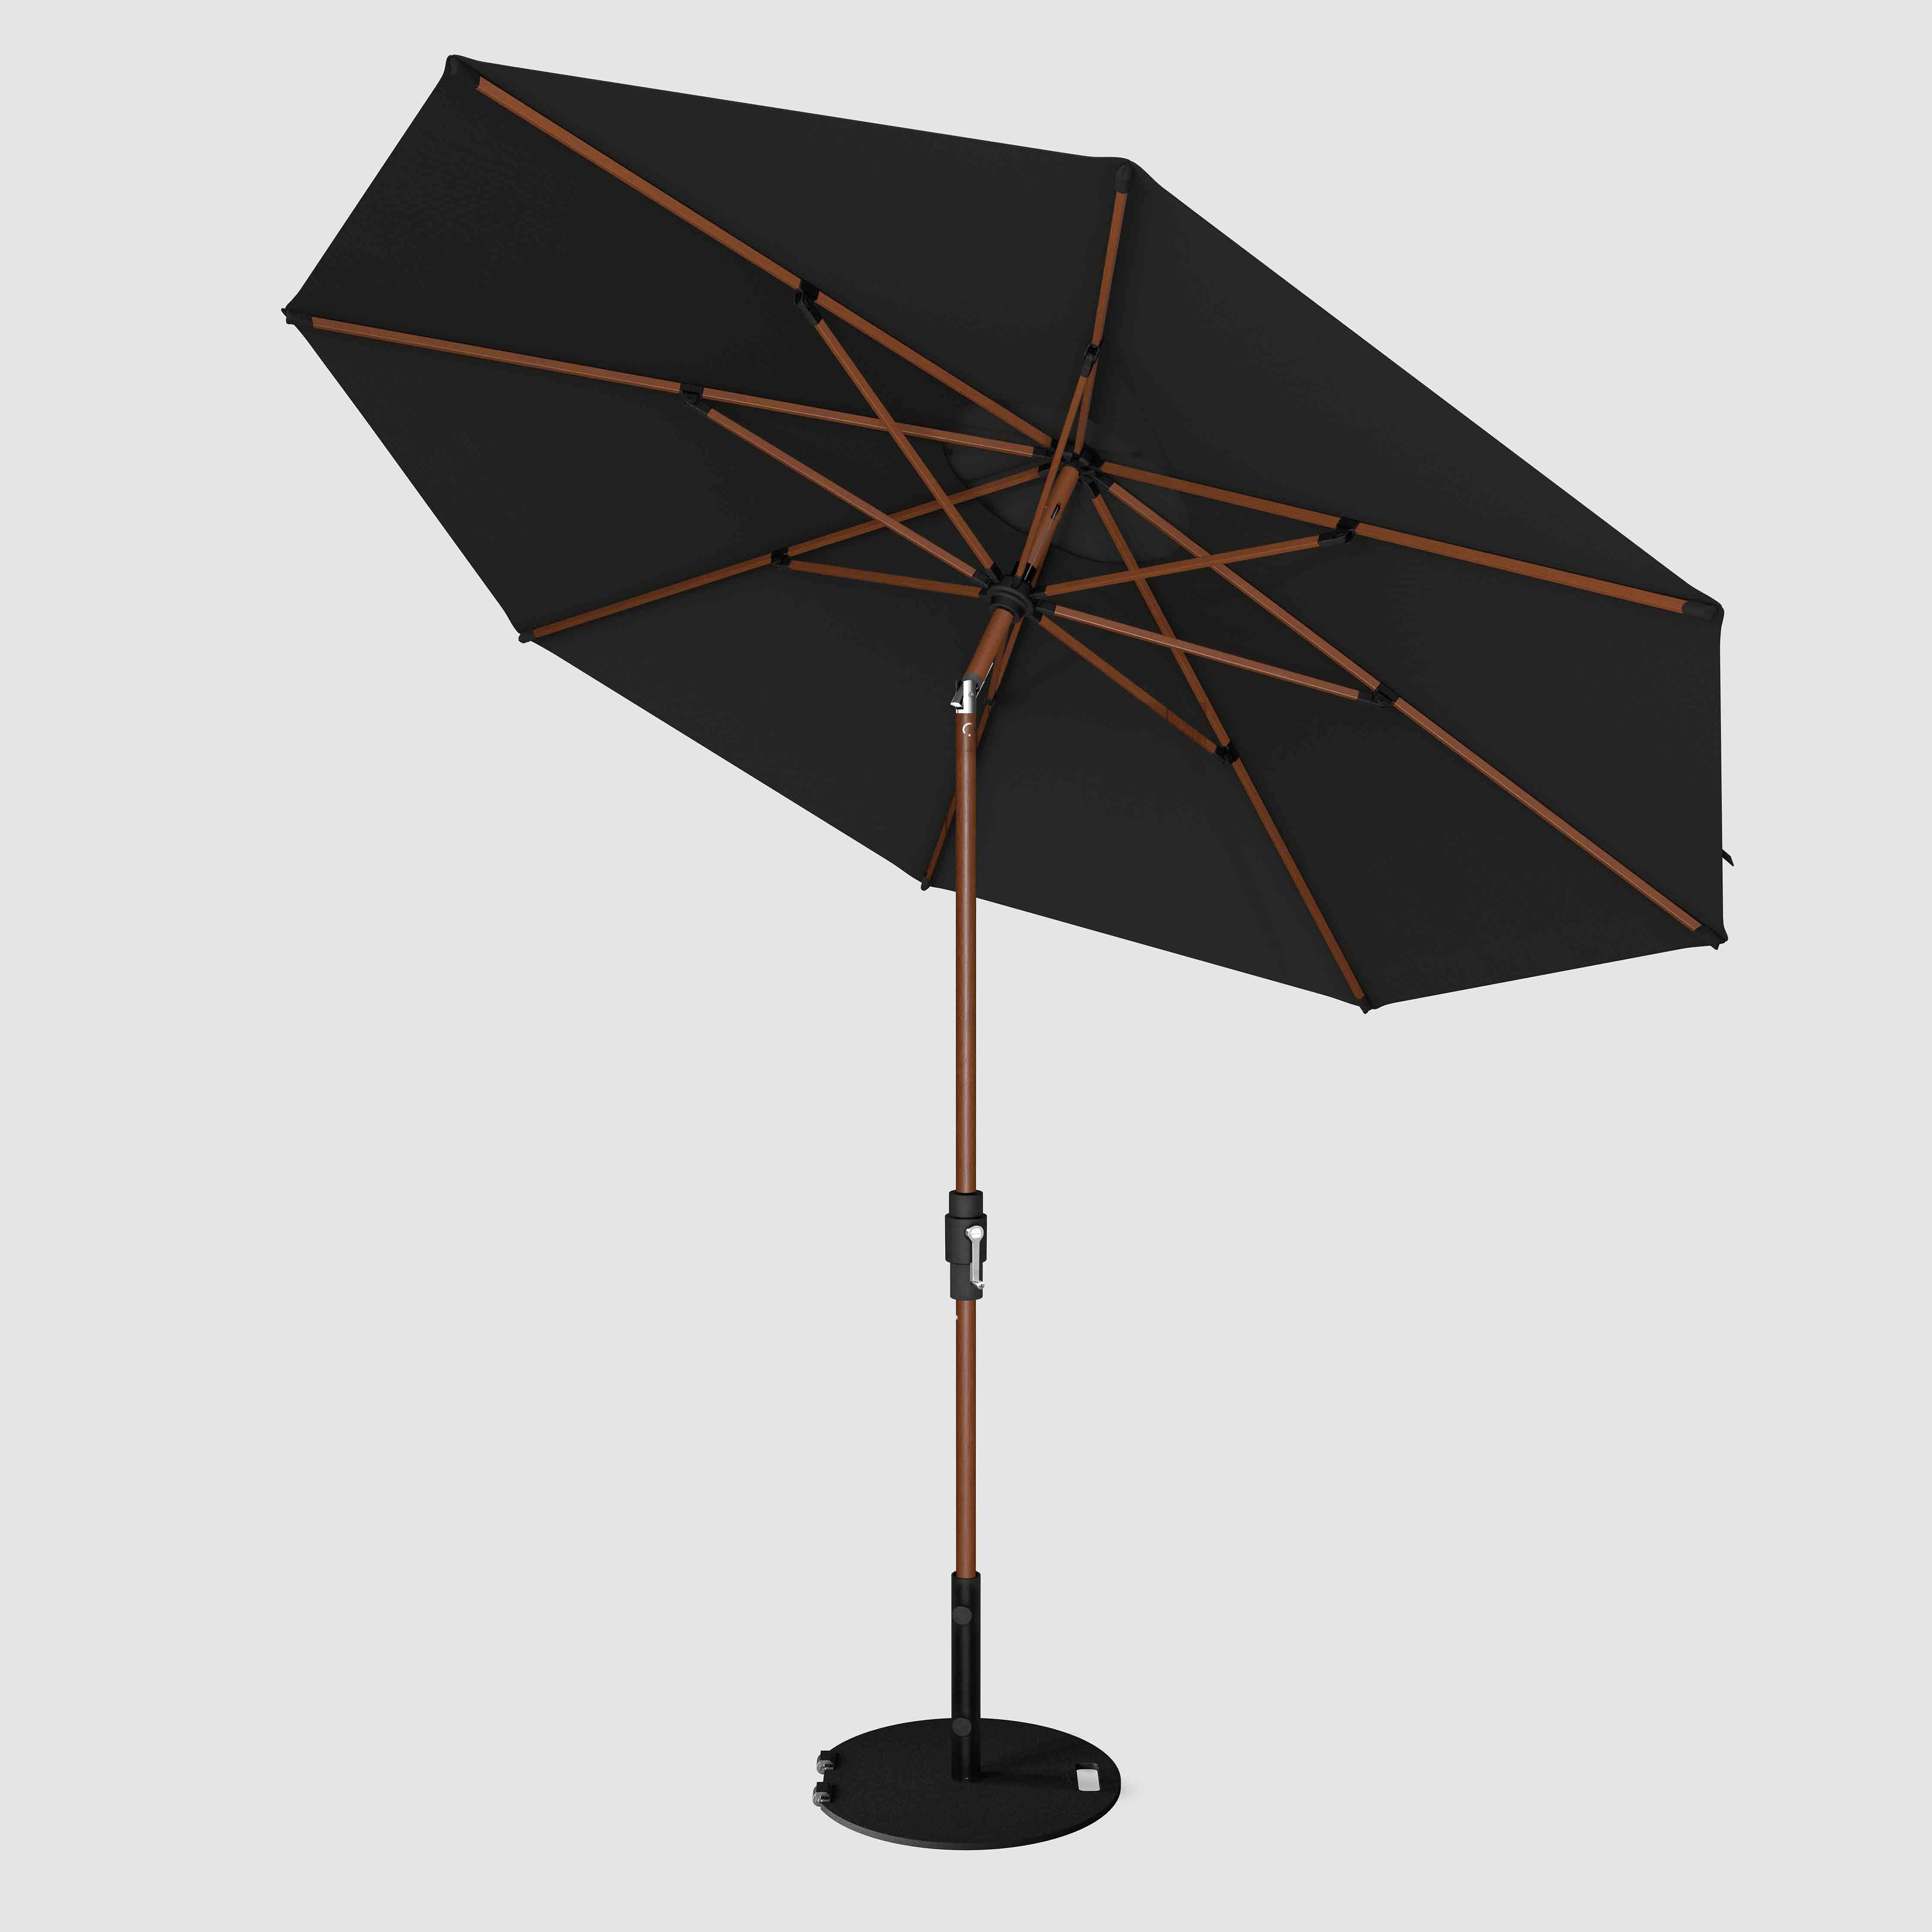 The Wooden 2™ - Sunbrella Black